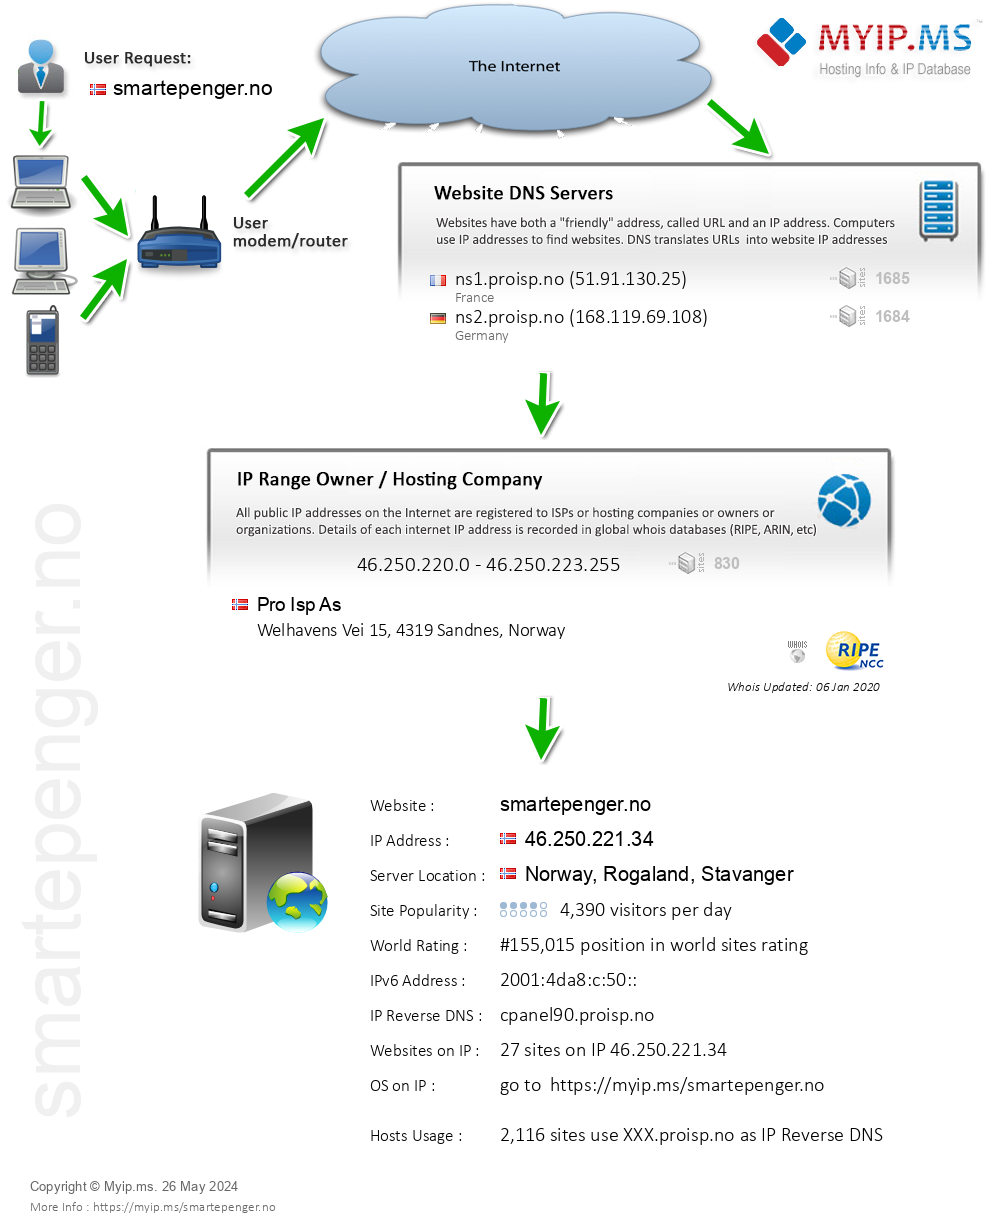 Smartepenger.no - Website Hosting Visual IP Diagram